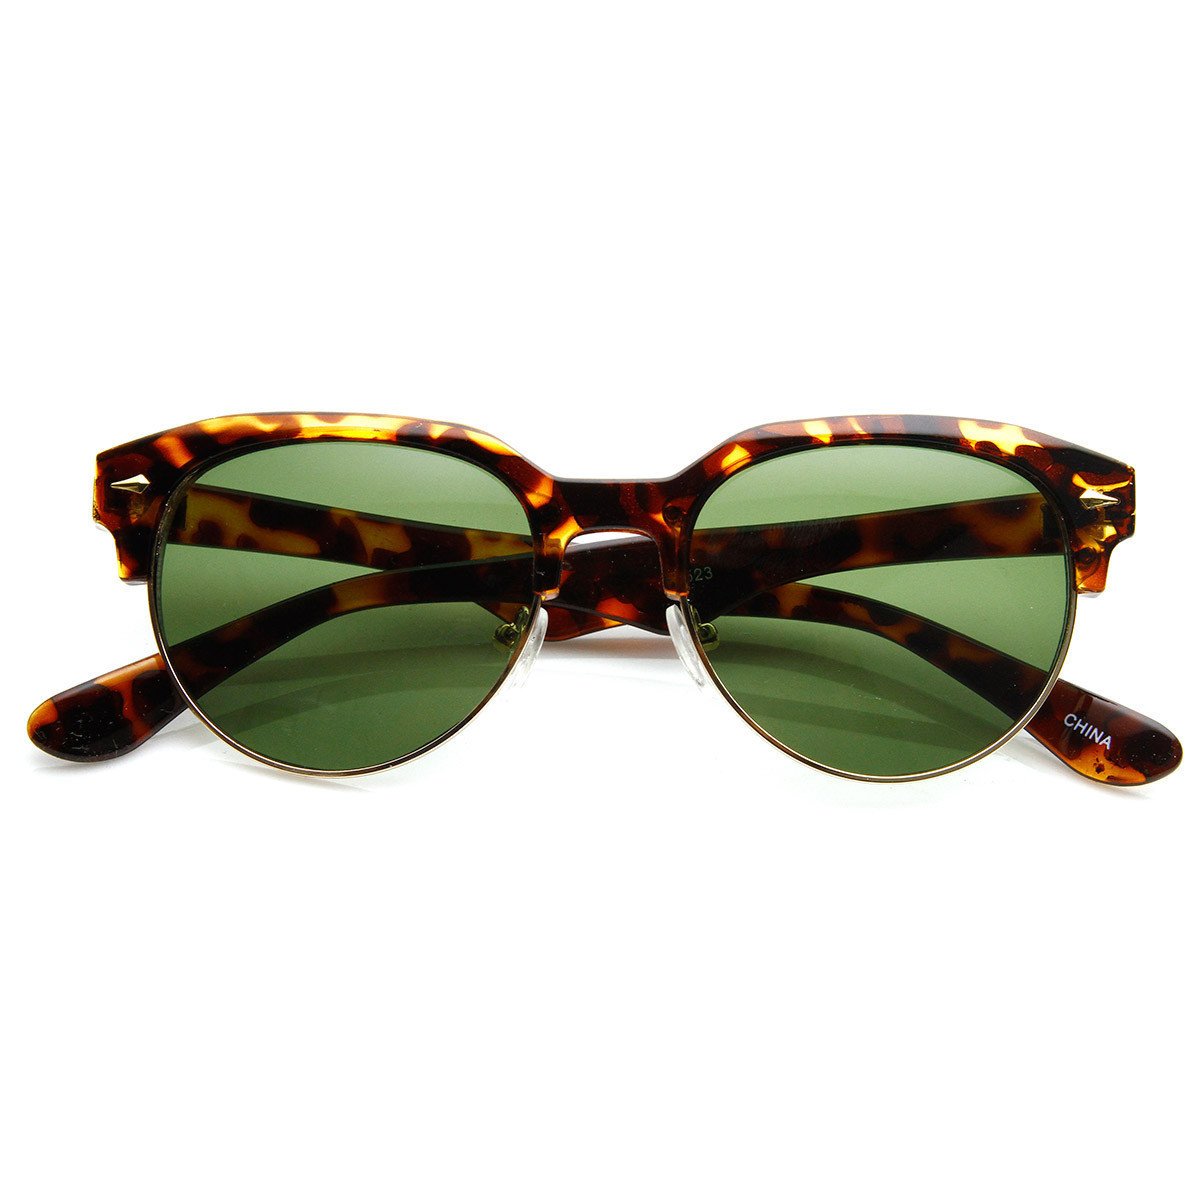 Classic Semi-Rimless Half Frame Retro Horned Rim Sunglasses - 8819 - Black Smoke